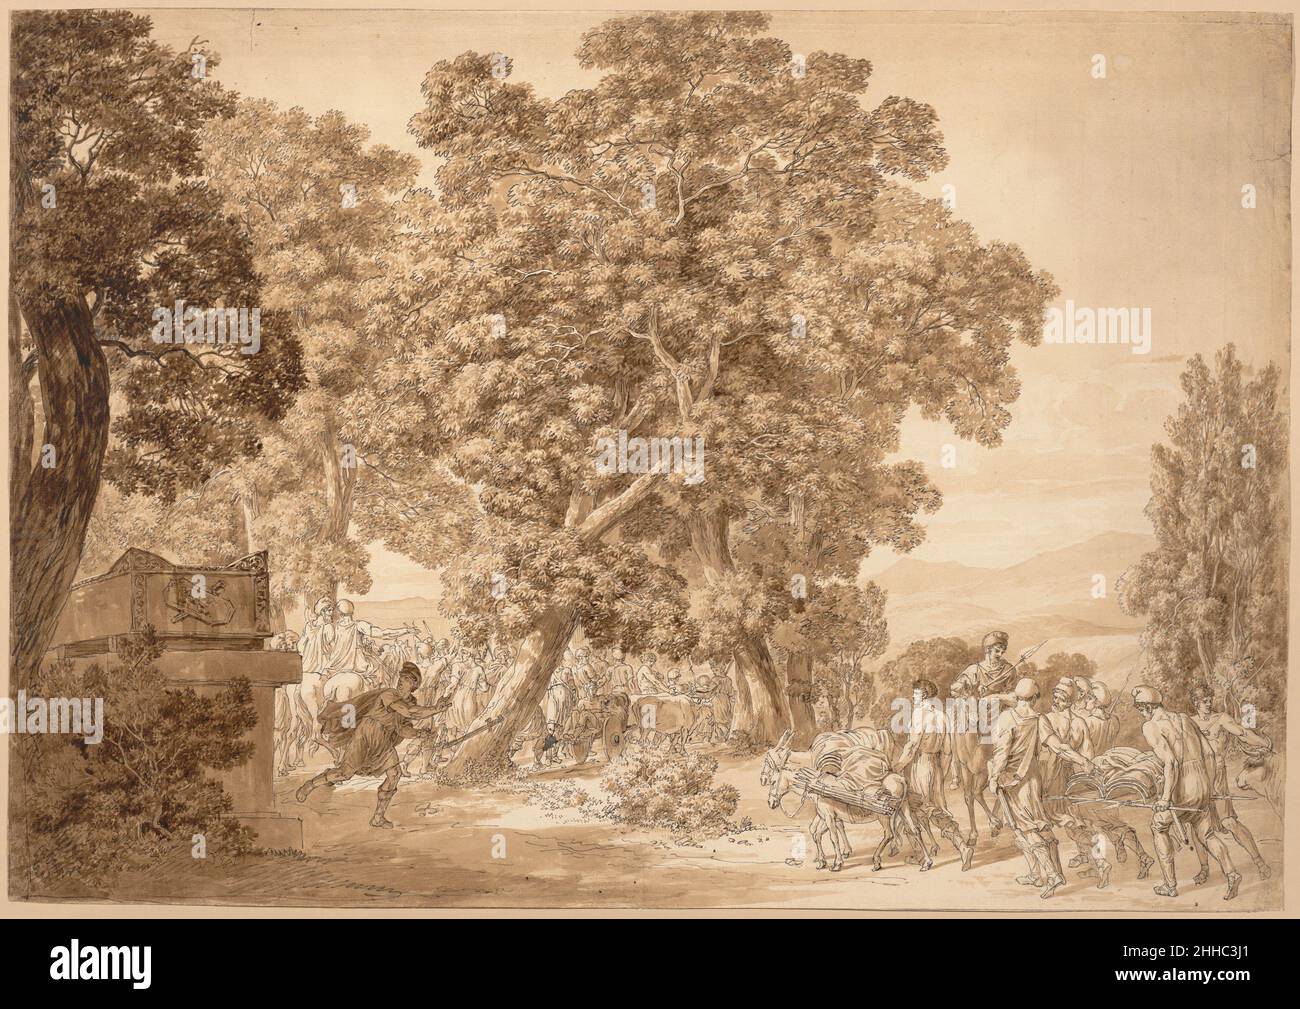 AJAX nella tomba ca. 1790–99 Jacob Wilhelm Mechau German questo disegno è un esempio impressionante dello stile maturo di Mechau e può essere datato alla fine del XVIII secolo, quando le composizioni dell'artista si allontanavano dall'influenza di Claude Lorrain, che generalmente trattava l'elemento umano nei suoi paesaggi come un semplice personale. Qui, gli alberi torreggianti non hanno importanza maggiore della scena raffigurata sotto. L'oggetto del disegno è spiegato da un poema del 1785 del poeta e filosofo tedesco Johann Gottfried Herder (1744-1803), iscritto sul retro del foglio, pr Foto Stock